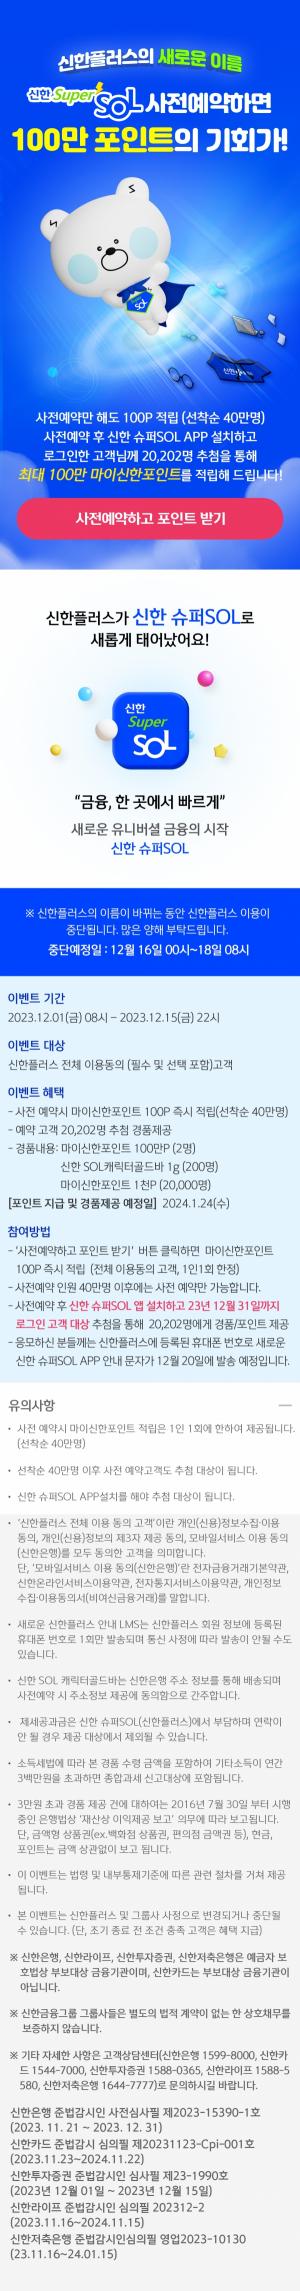 신한금융그룹, 신한 슈퍼SOL 사전 예약 이벤트 참여자 10만명 돌파